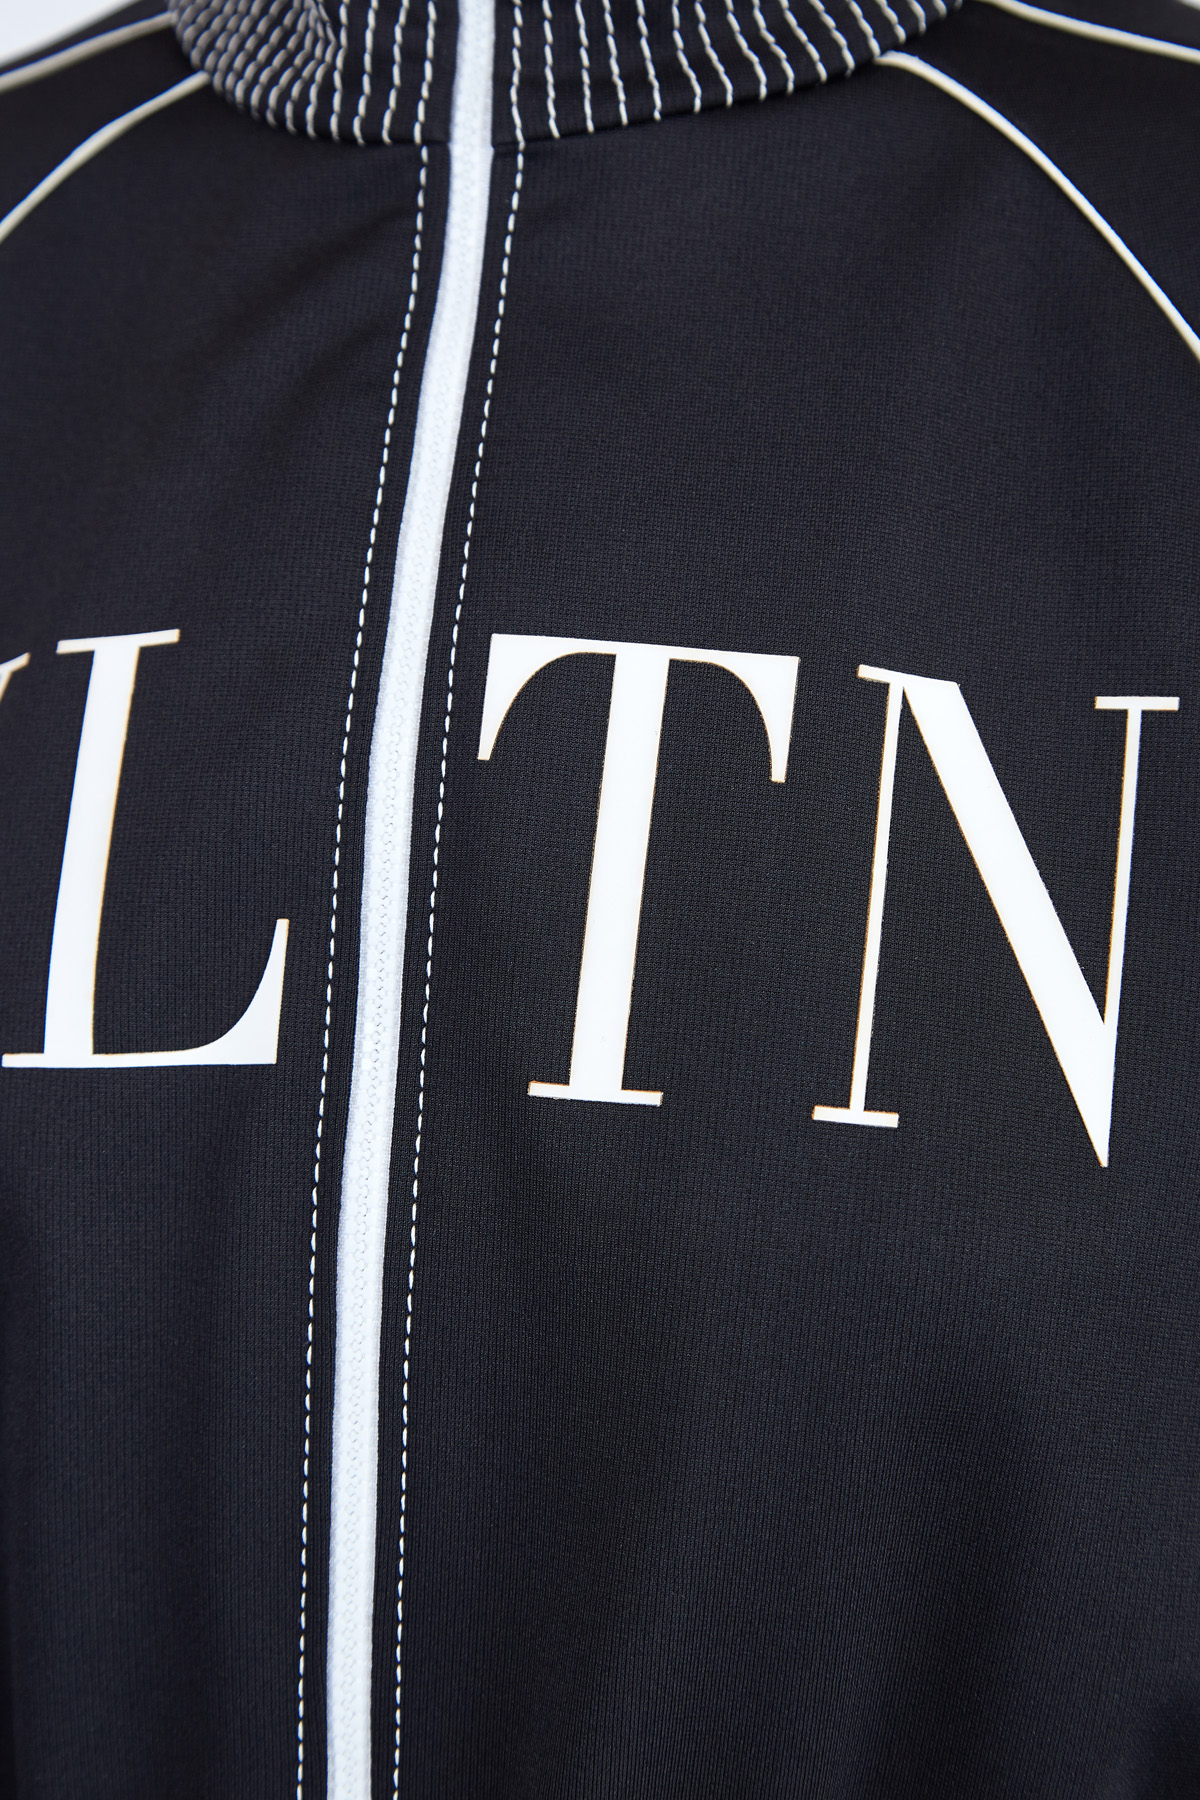 Платье в стиле спортшик с логотипом VLTN и контрастной отделкой VALENTINO, цвет черно-белый, размер 38;40 - фото 5